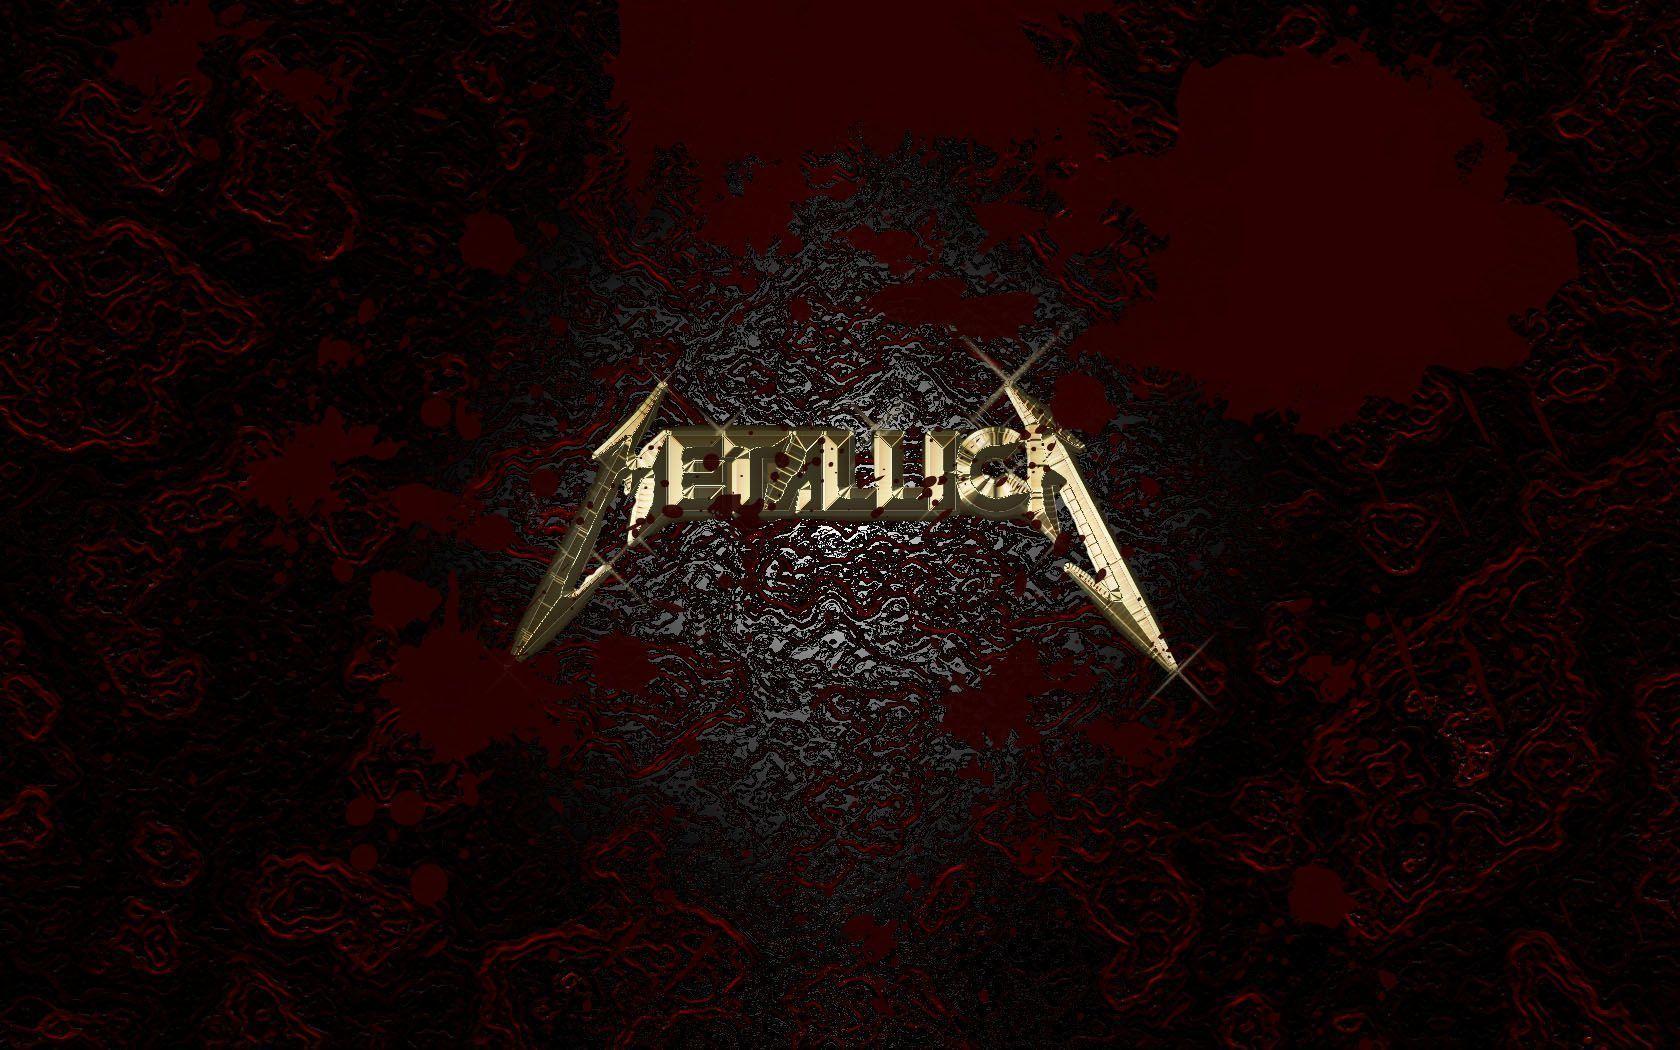 Metallica Logo Wallpaper Image, Metallica Picture Desktop